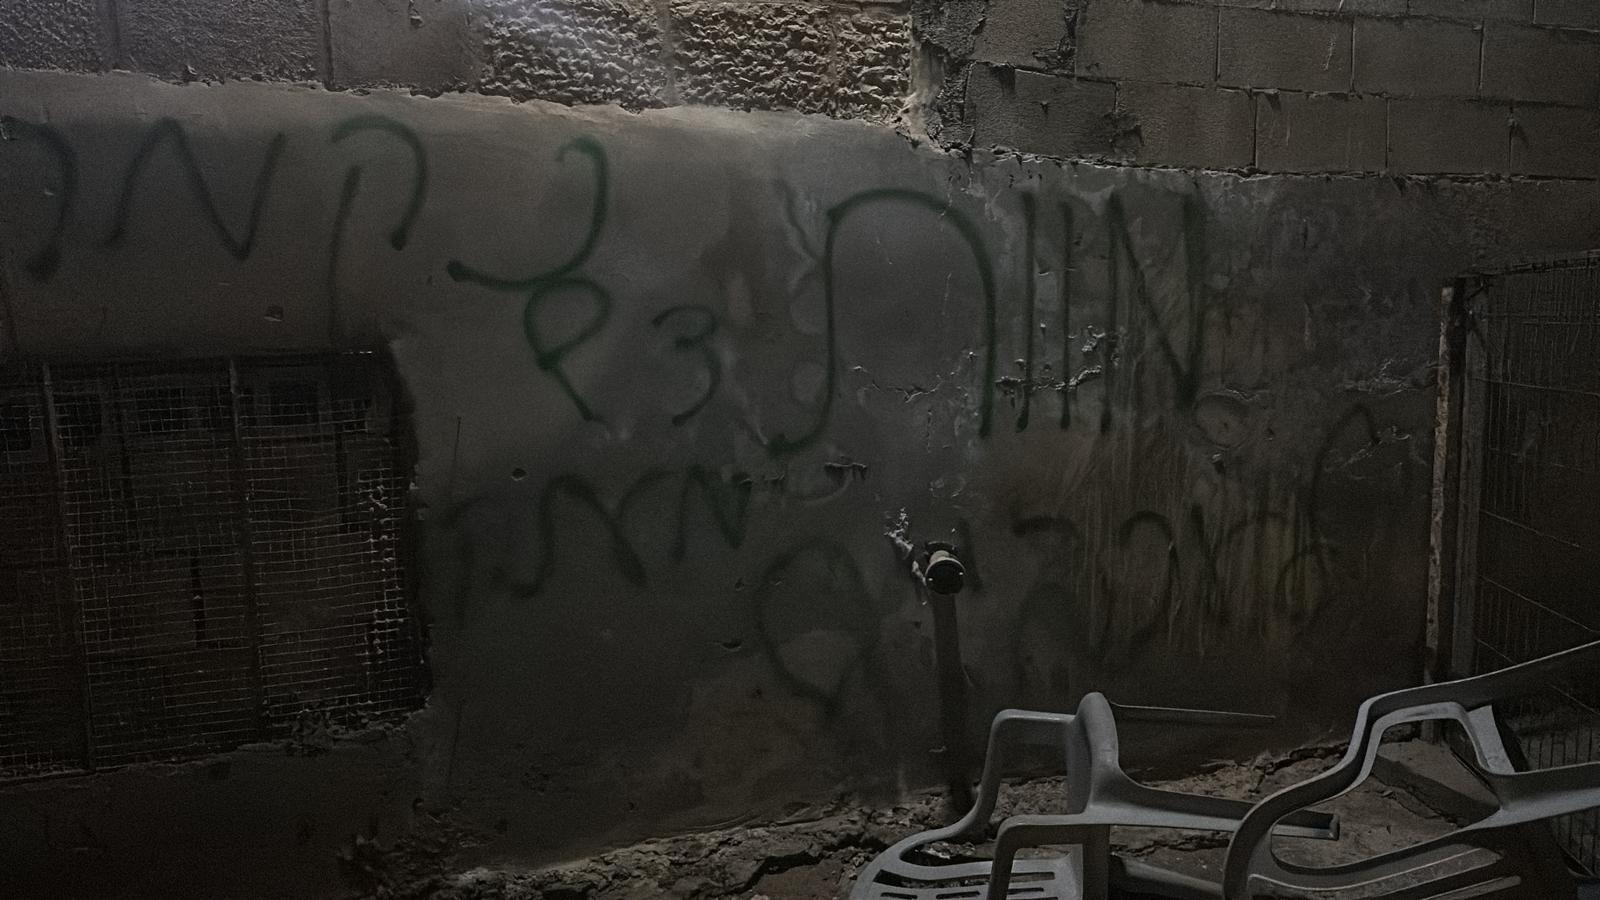 كتب المستوطنون على الجدران: الموت للعرب والانتقام..تدفيع الثمن